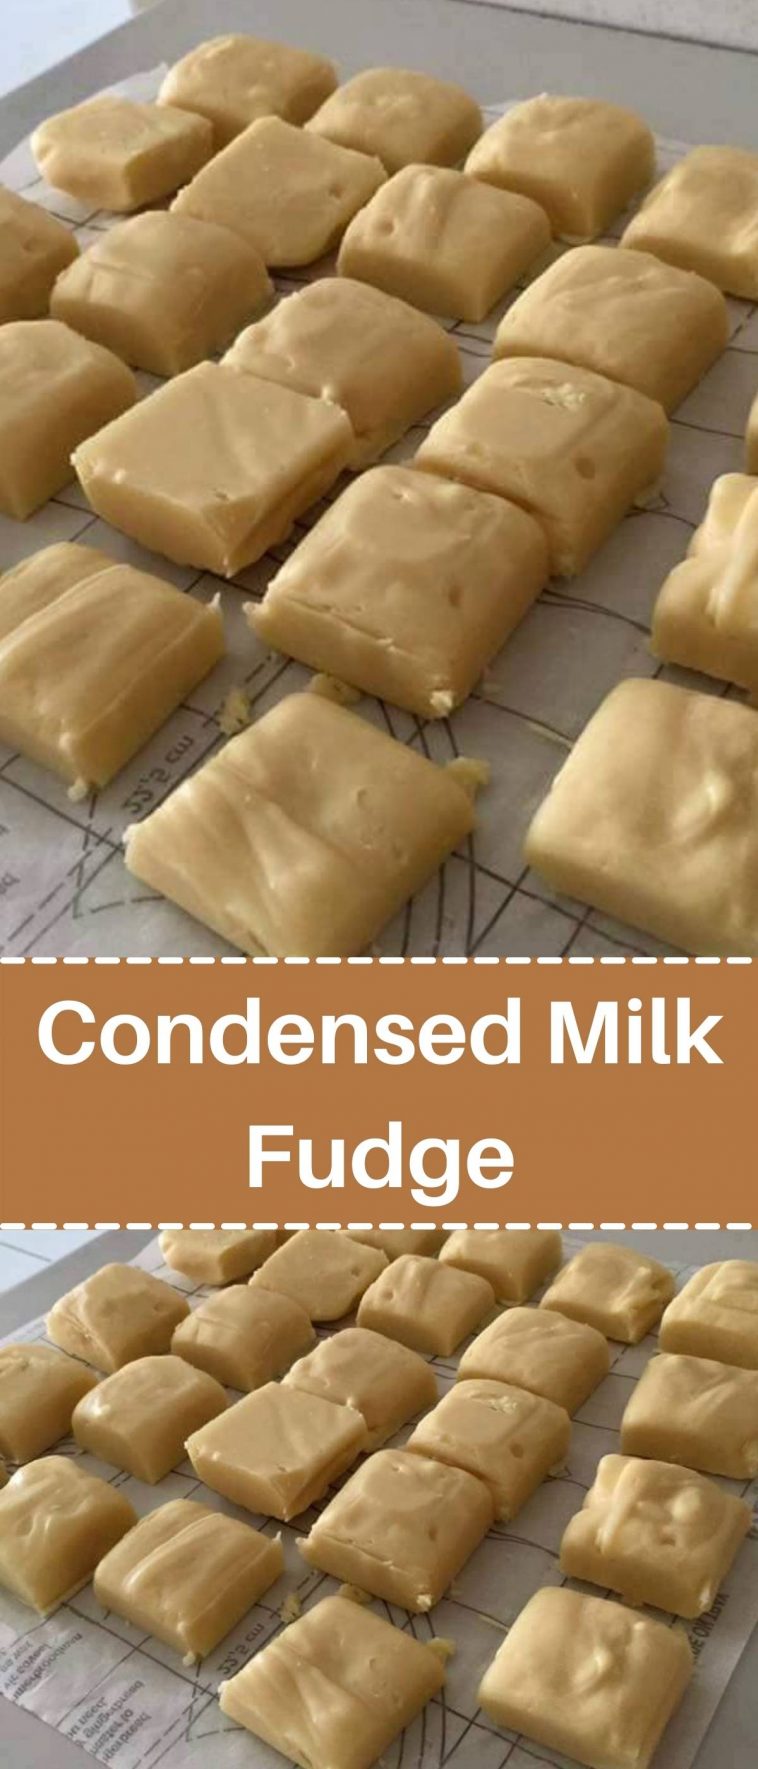 Condensed Milk Fudge